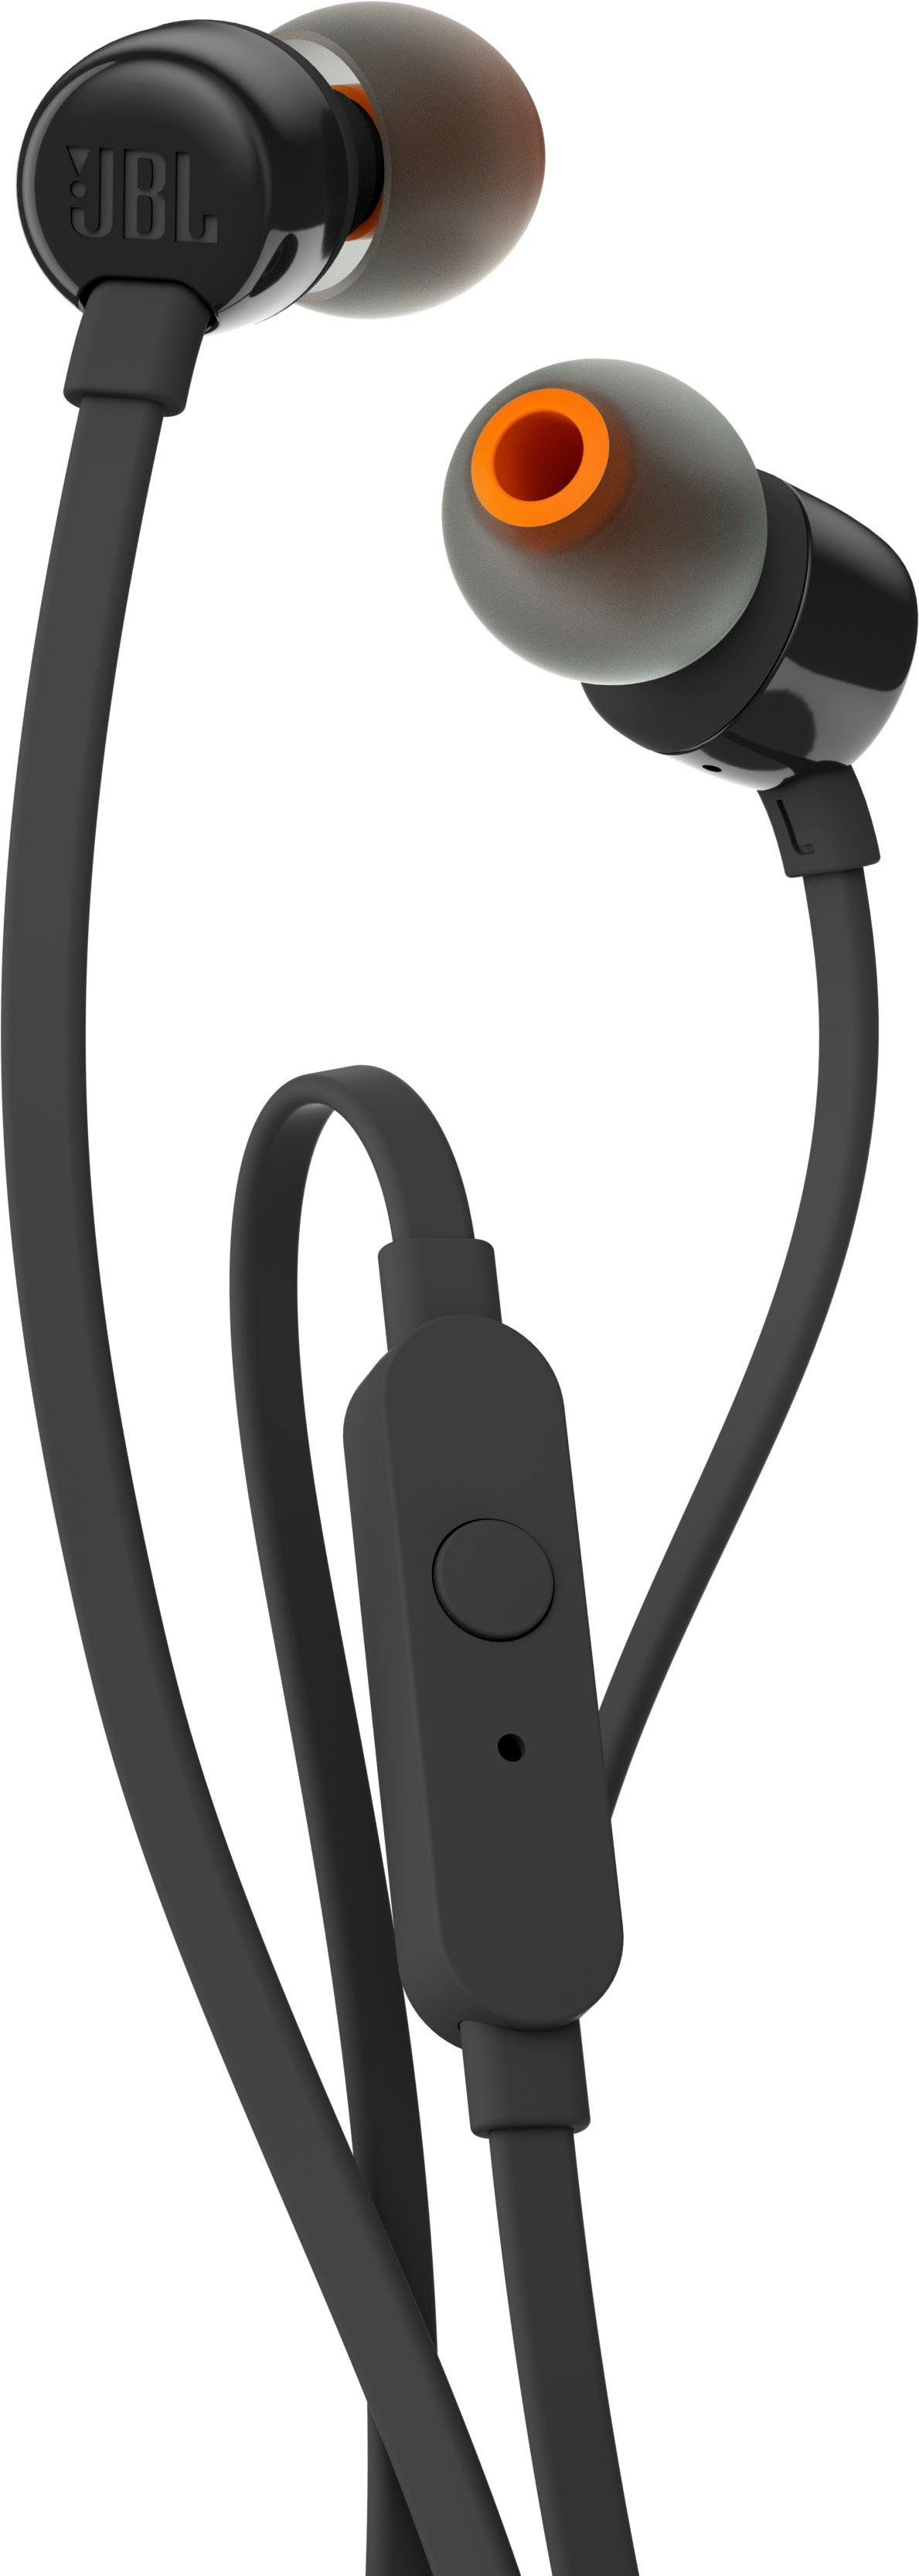 JBL schwarz T110 In-Ear-Kopfhörer